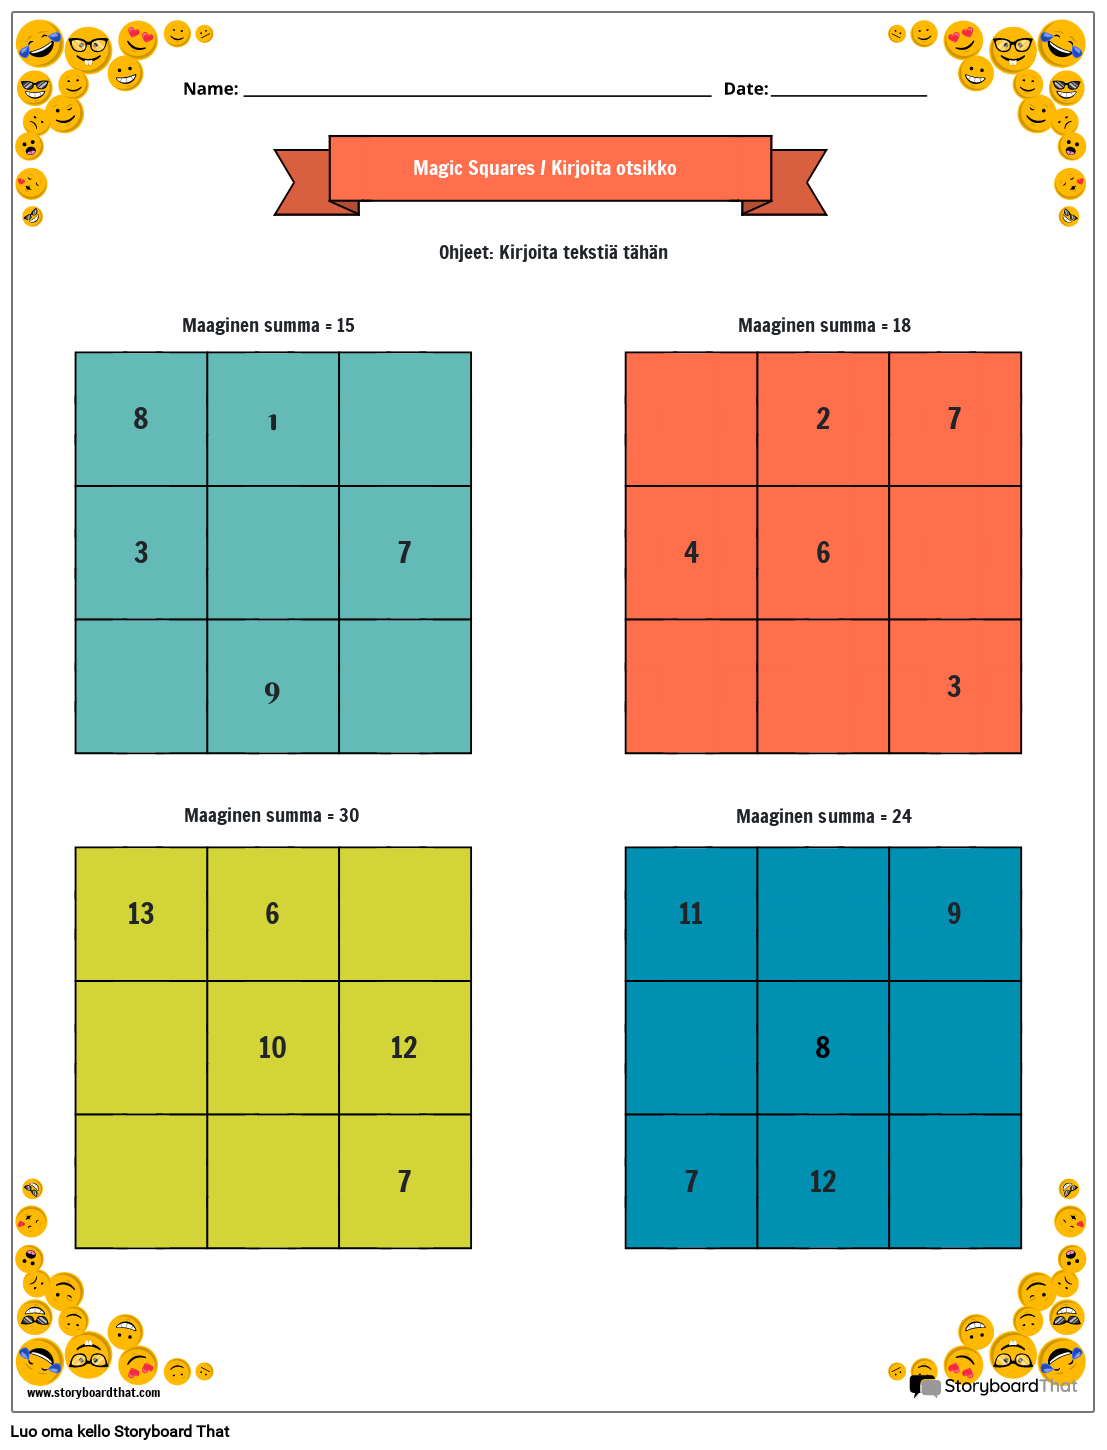 3x3 Magic Squares -työarkki, jossa on hymynaamareunus